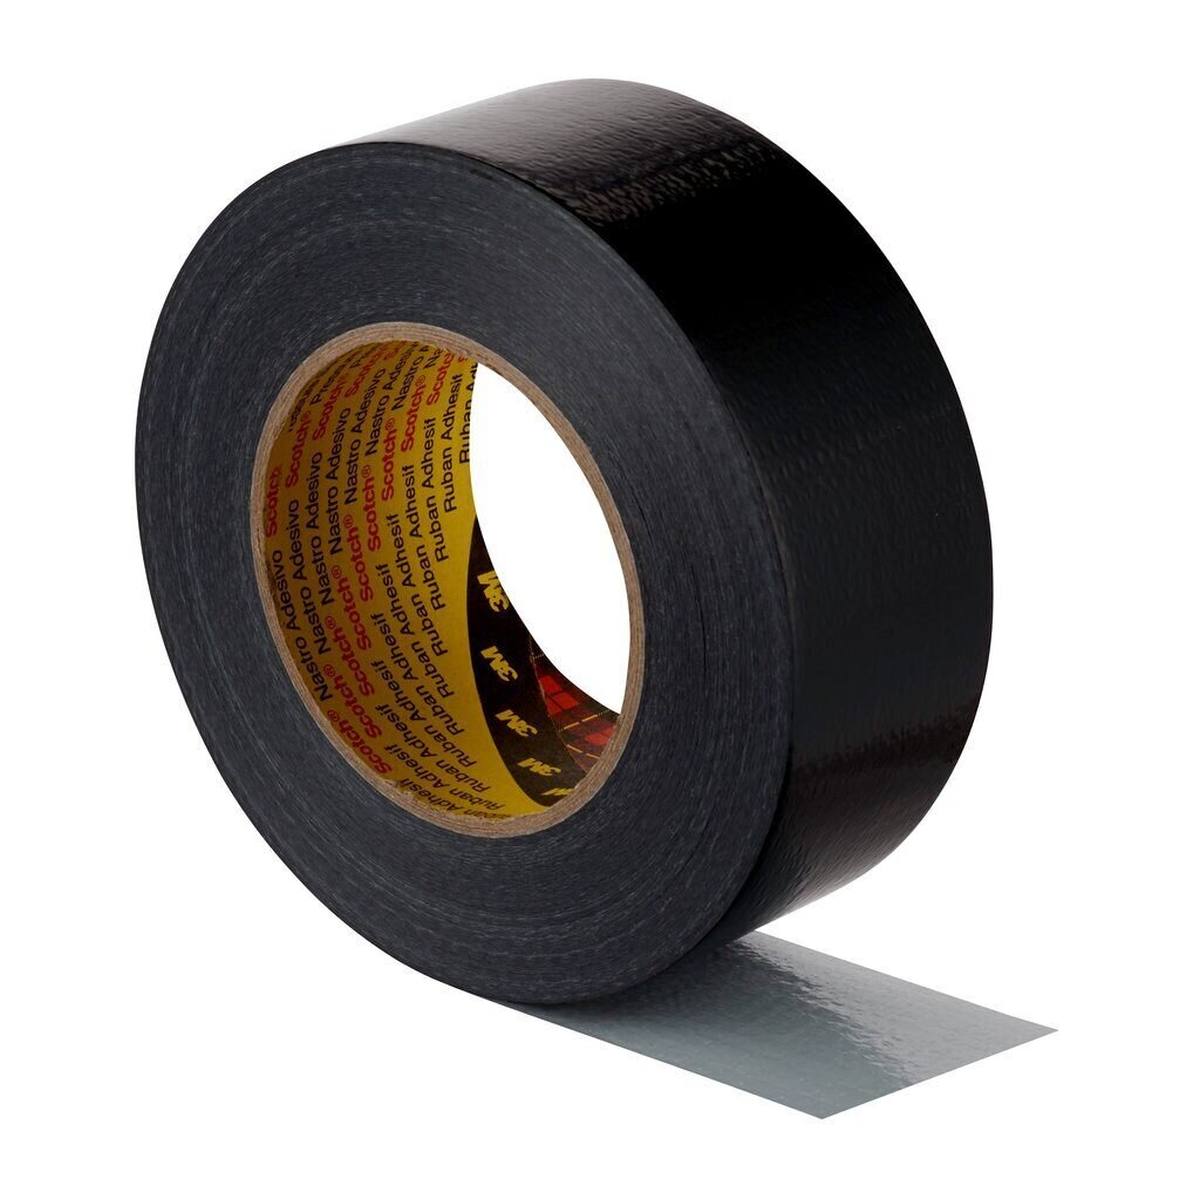 3M textielfolie plakband 2904, zwart 48mm x 50m, 0.19mm